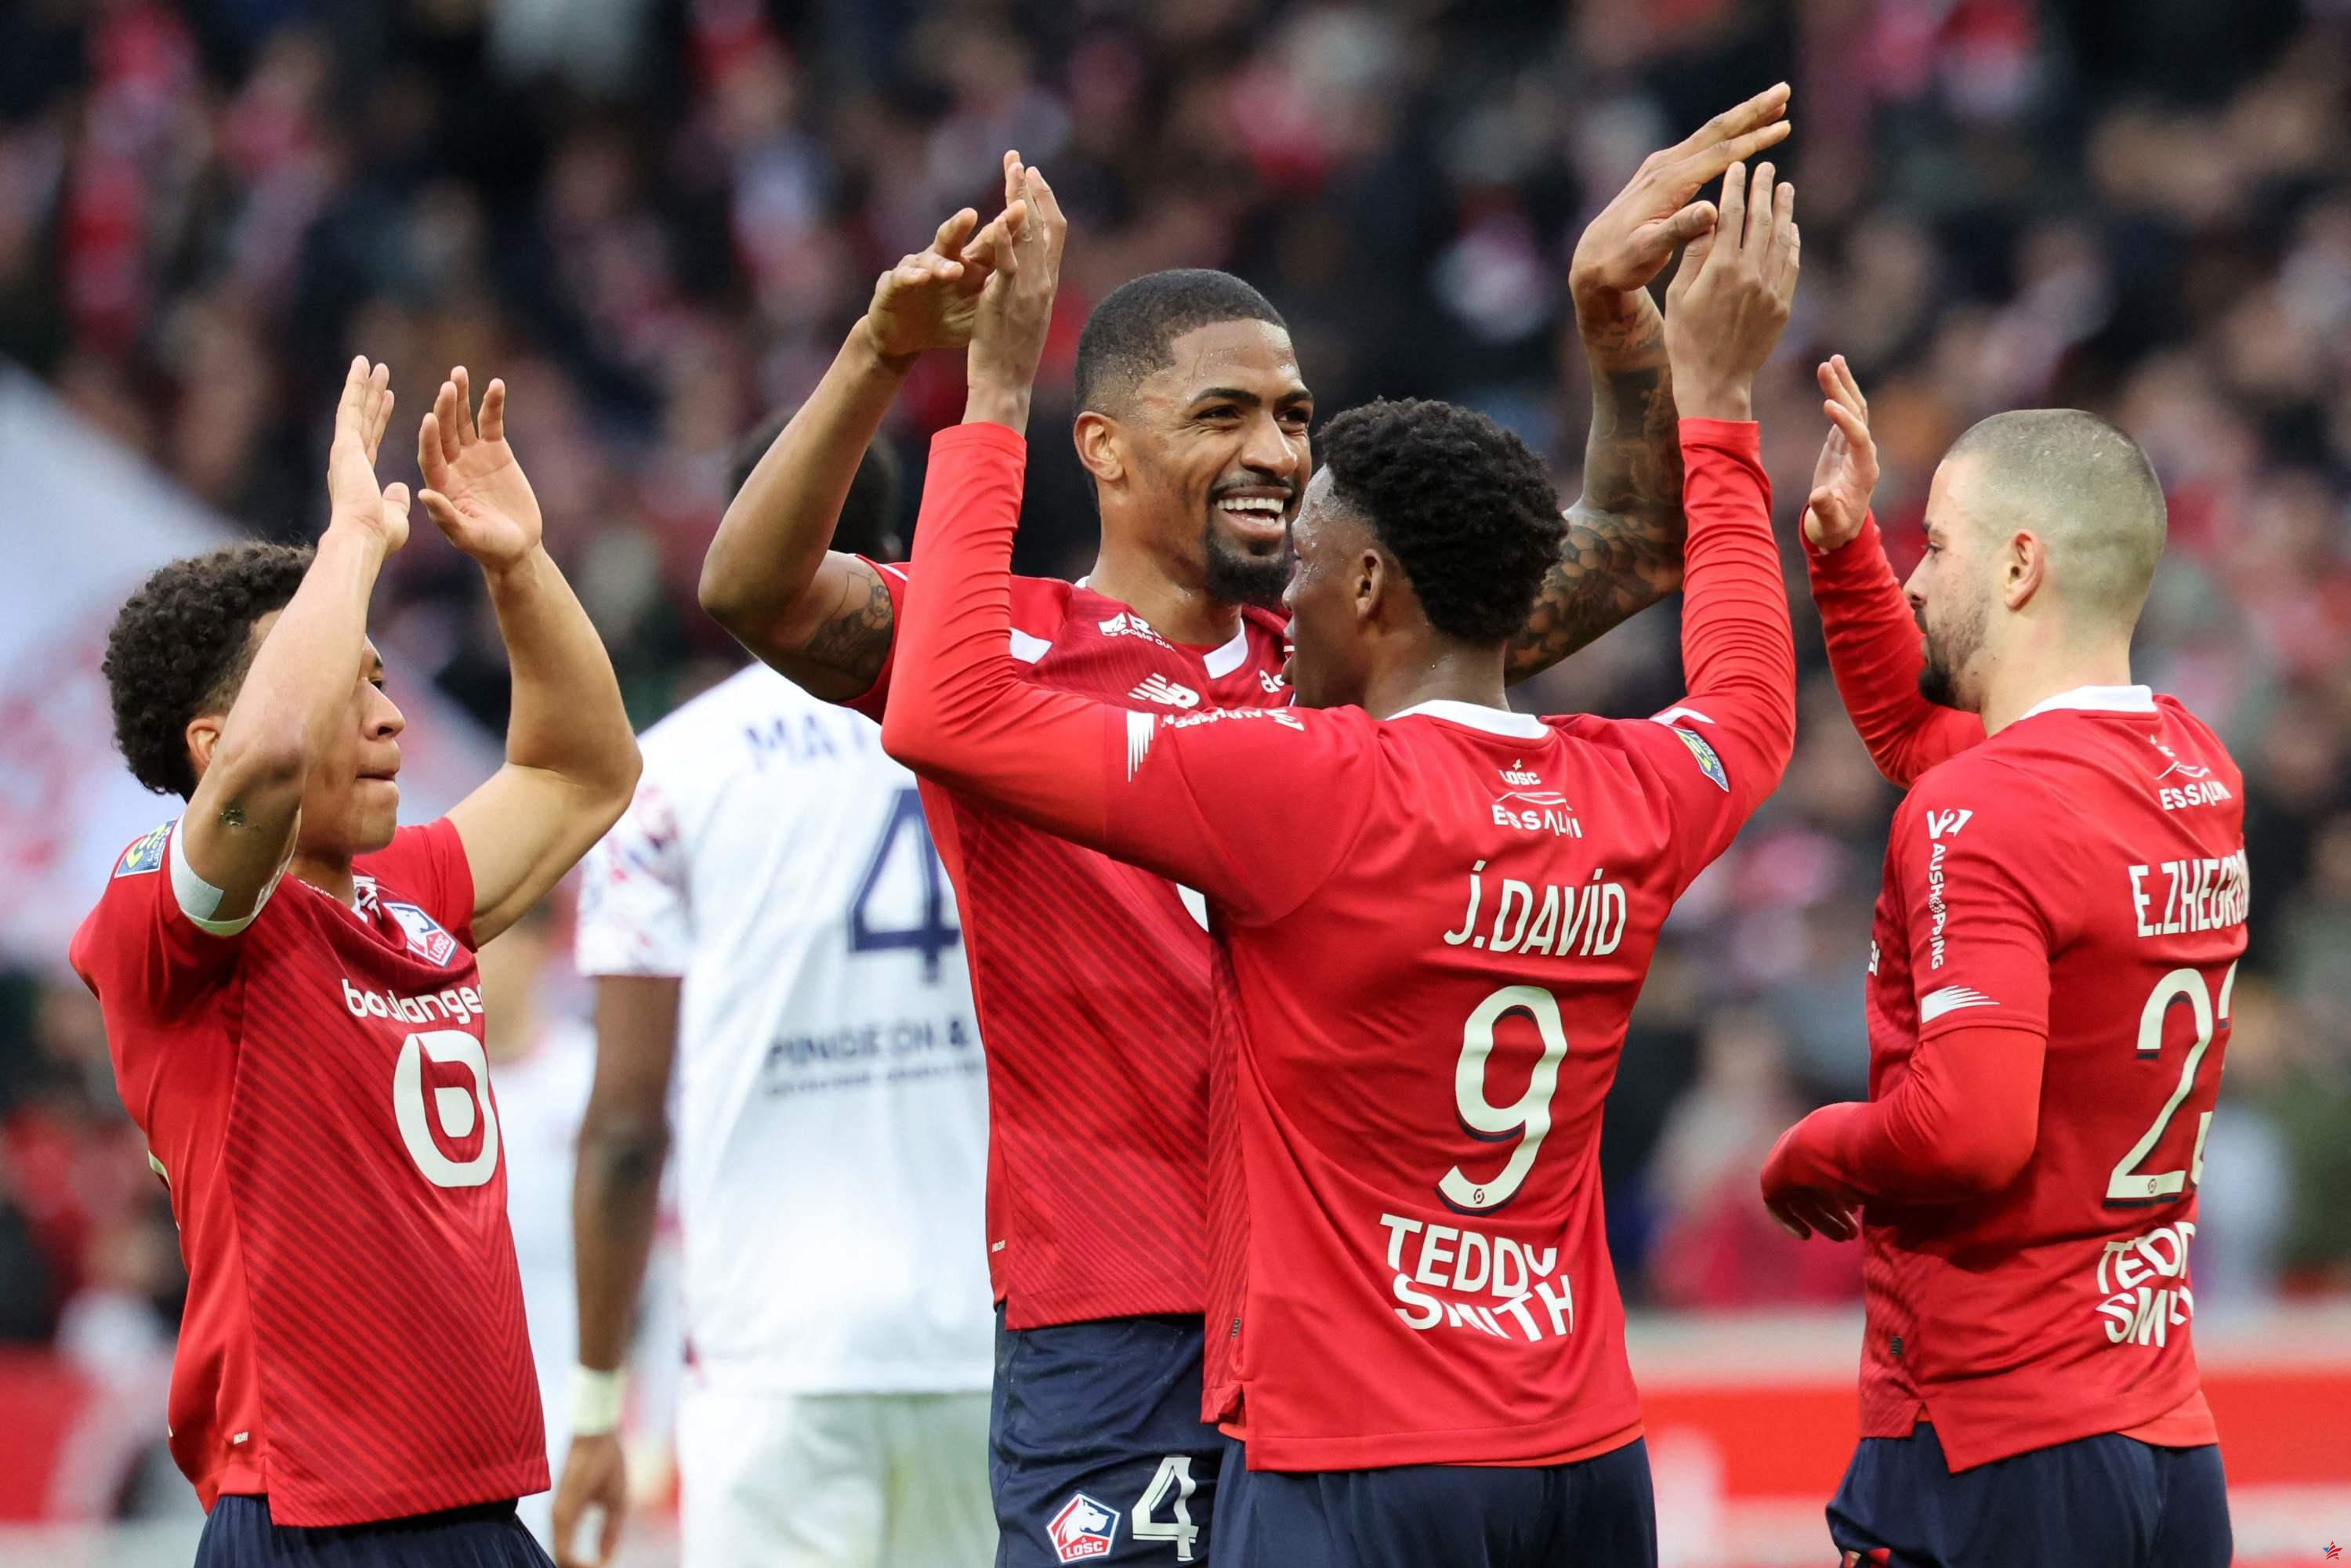 Ligue 1: Lille golpea a Clermont, Toulouse vence a Reims, Lorient ya no es el último